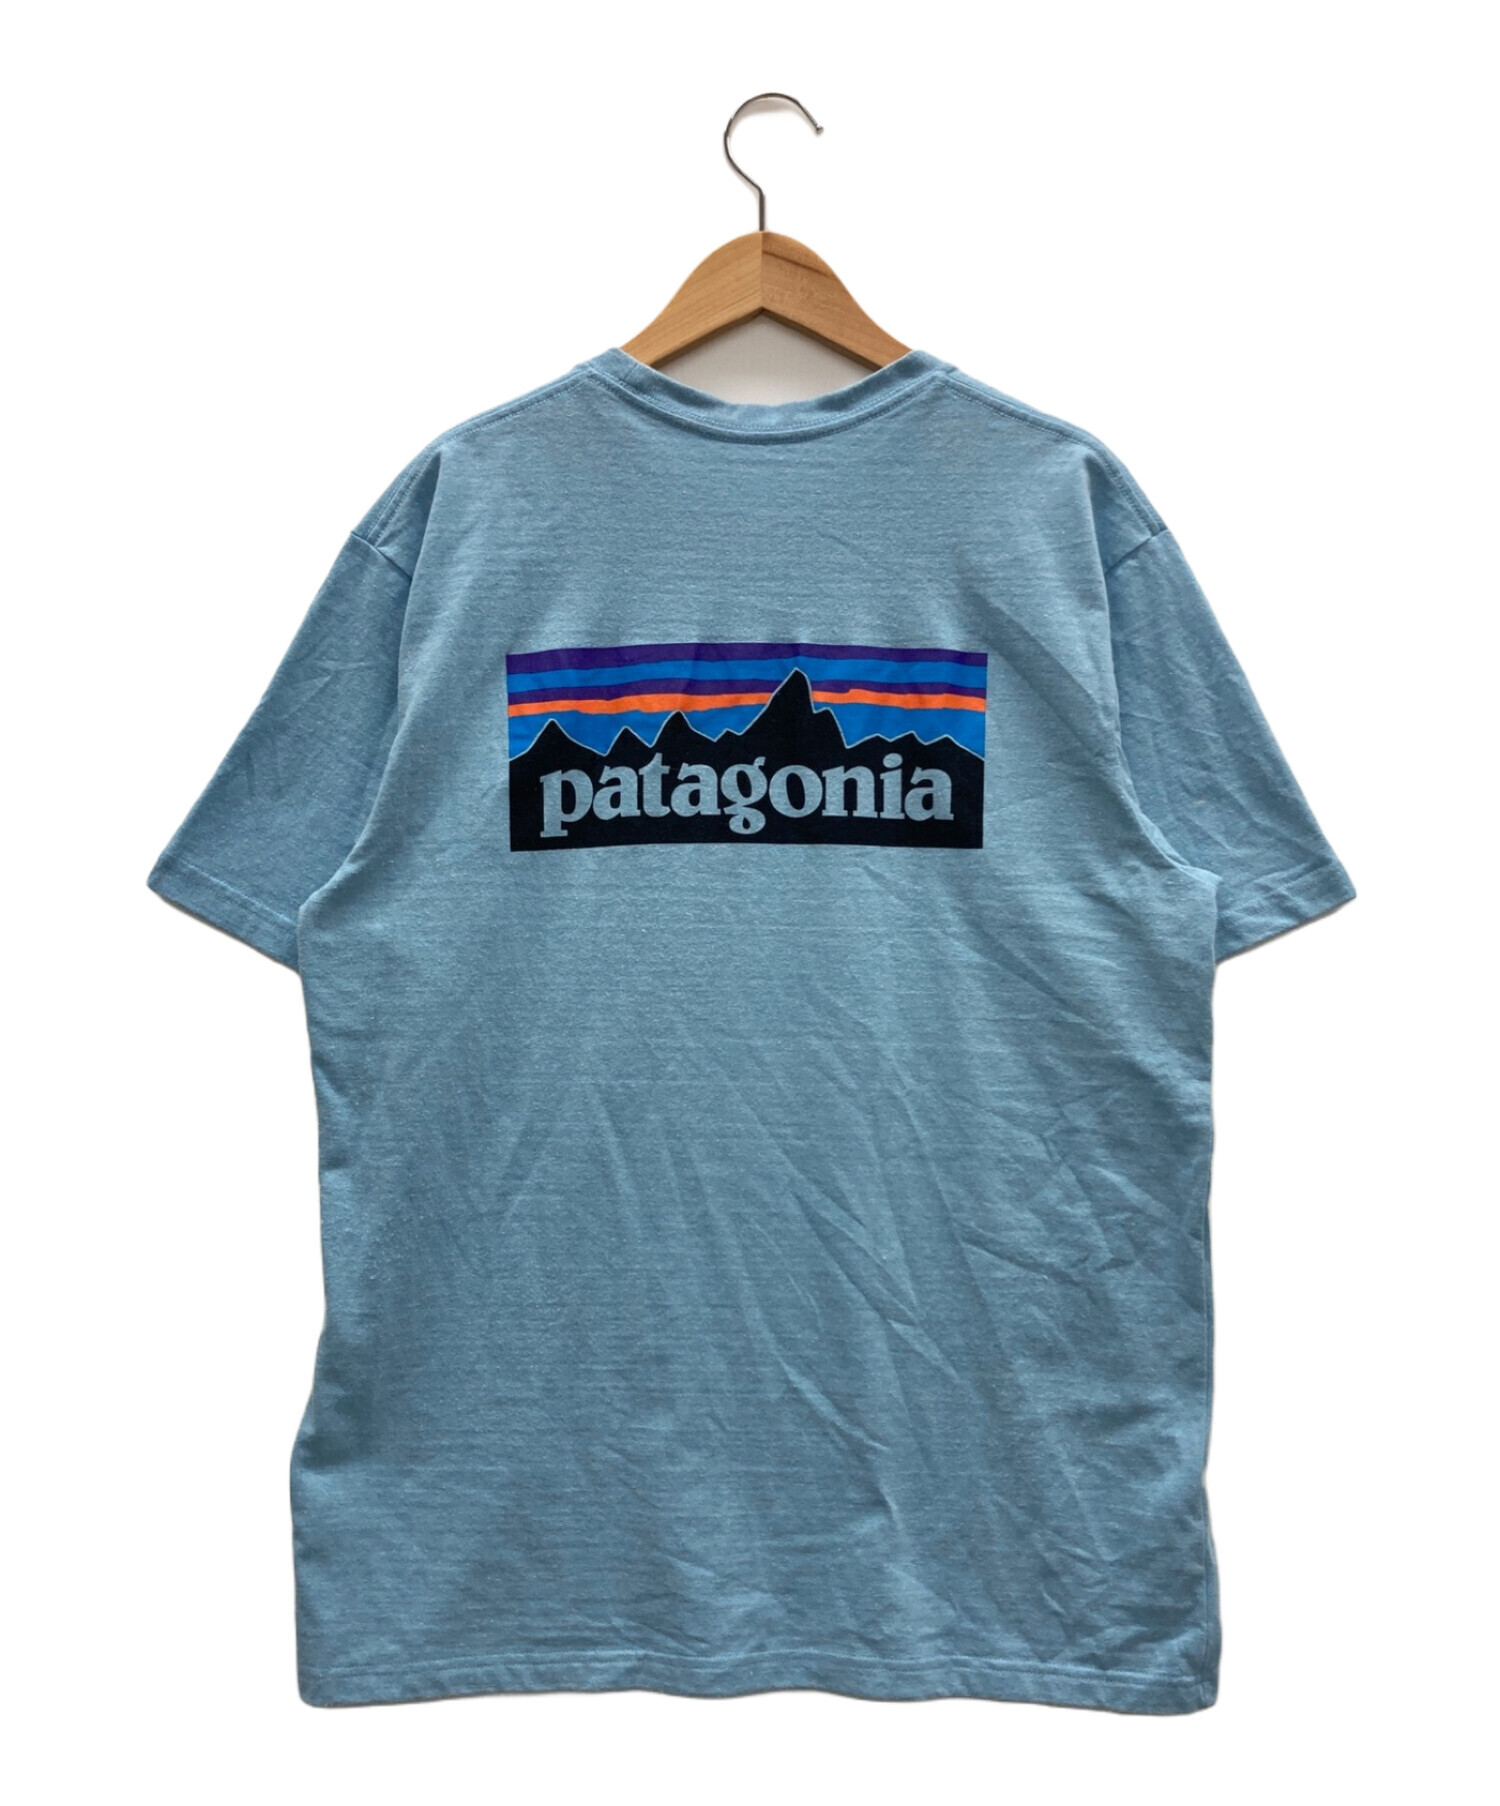 Patagonia (パタゴニア) Tシャツ ブルー サイズ:M